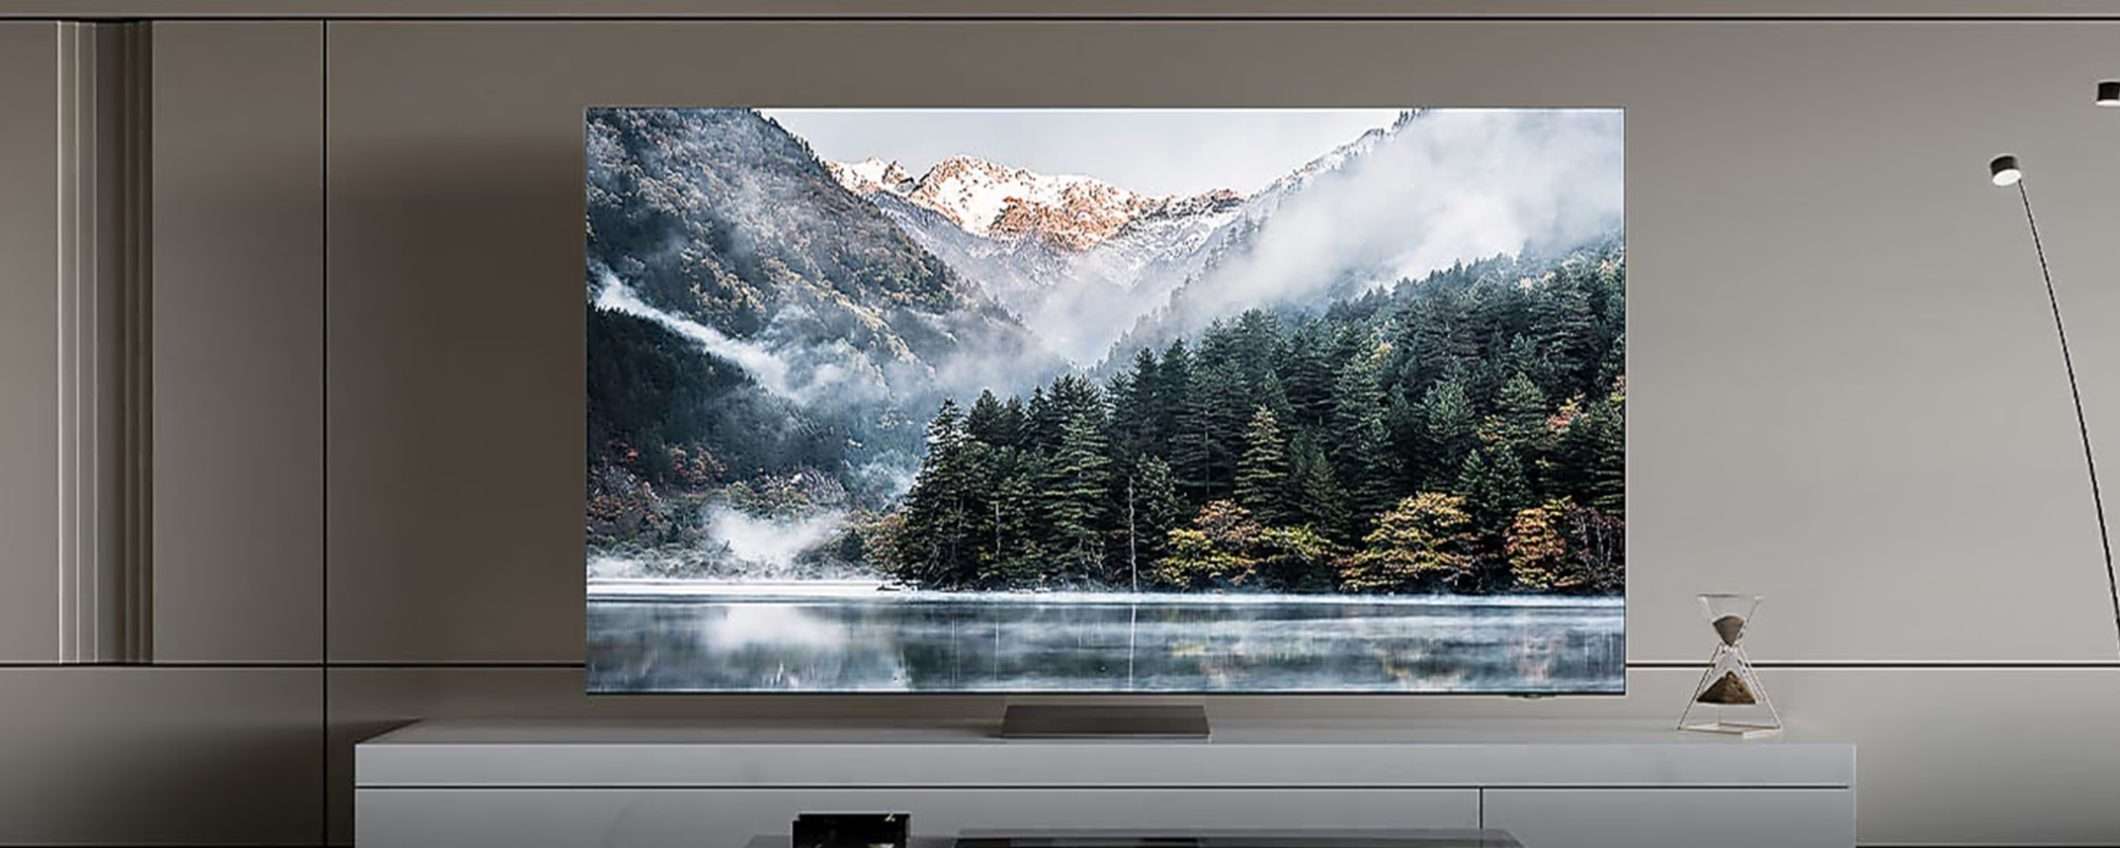 Samsung TV Neo QLED 8K: quasi 1.000€ di risparmio sul sito ufficiale